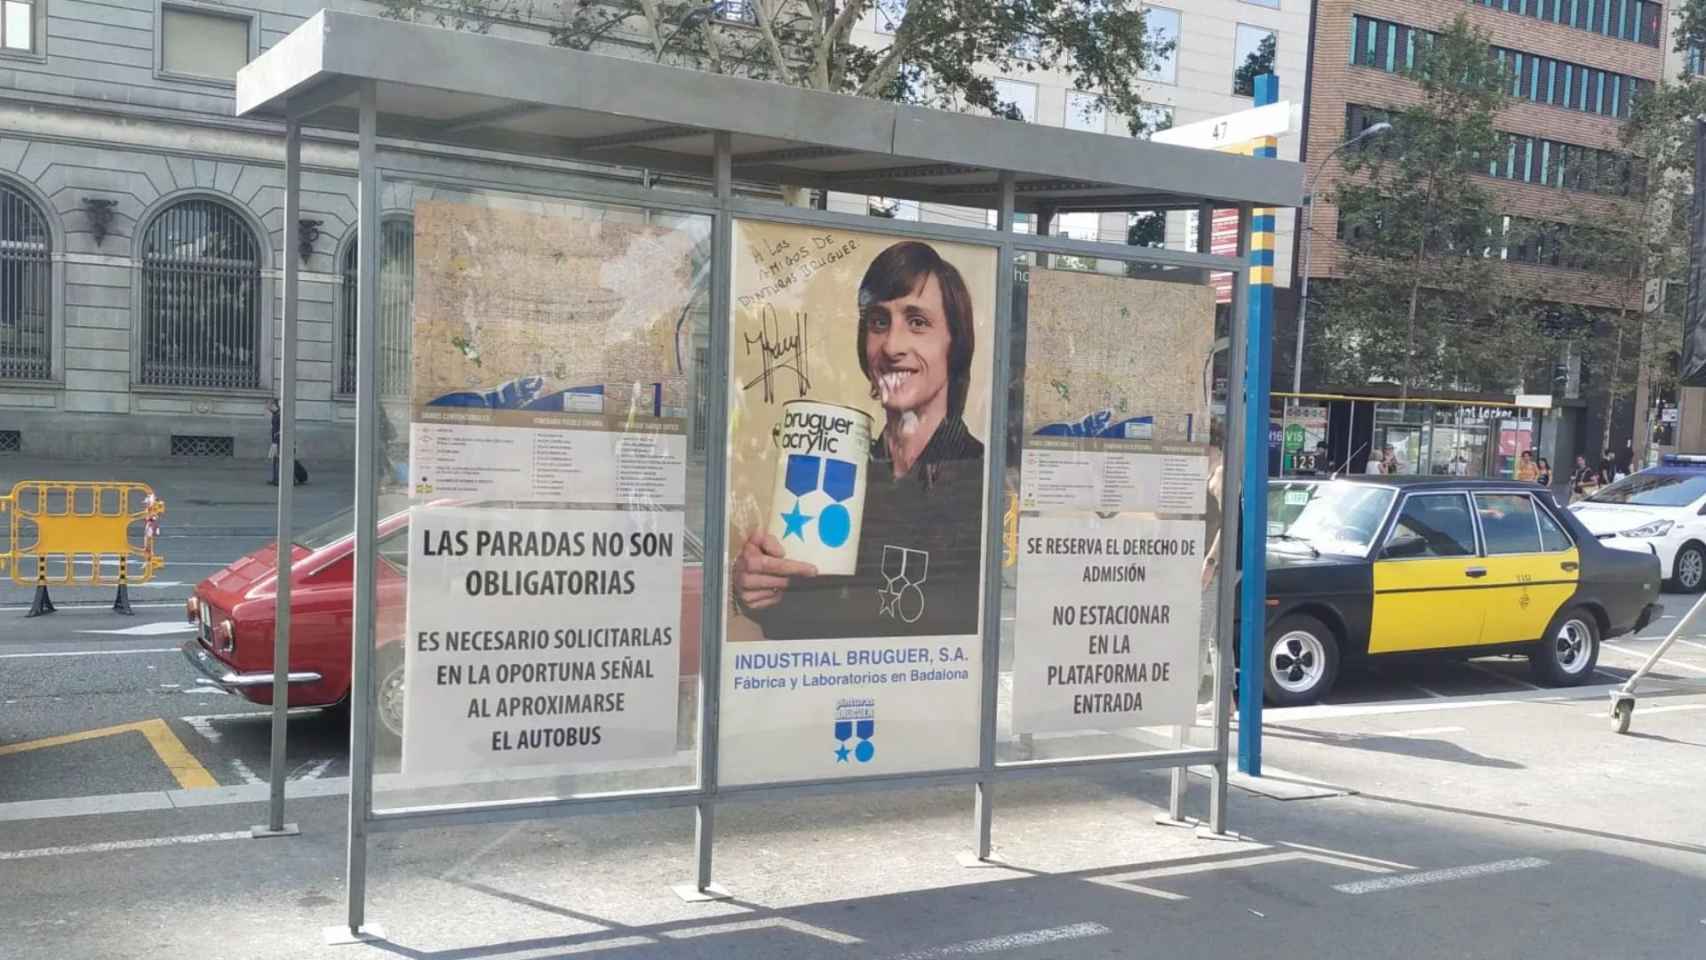 Marquesina en la plaza de Catalunya decorada con un anuncio de Johan Cruyff y pinturas Bruguer / BETEVÉ